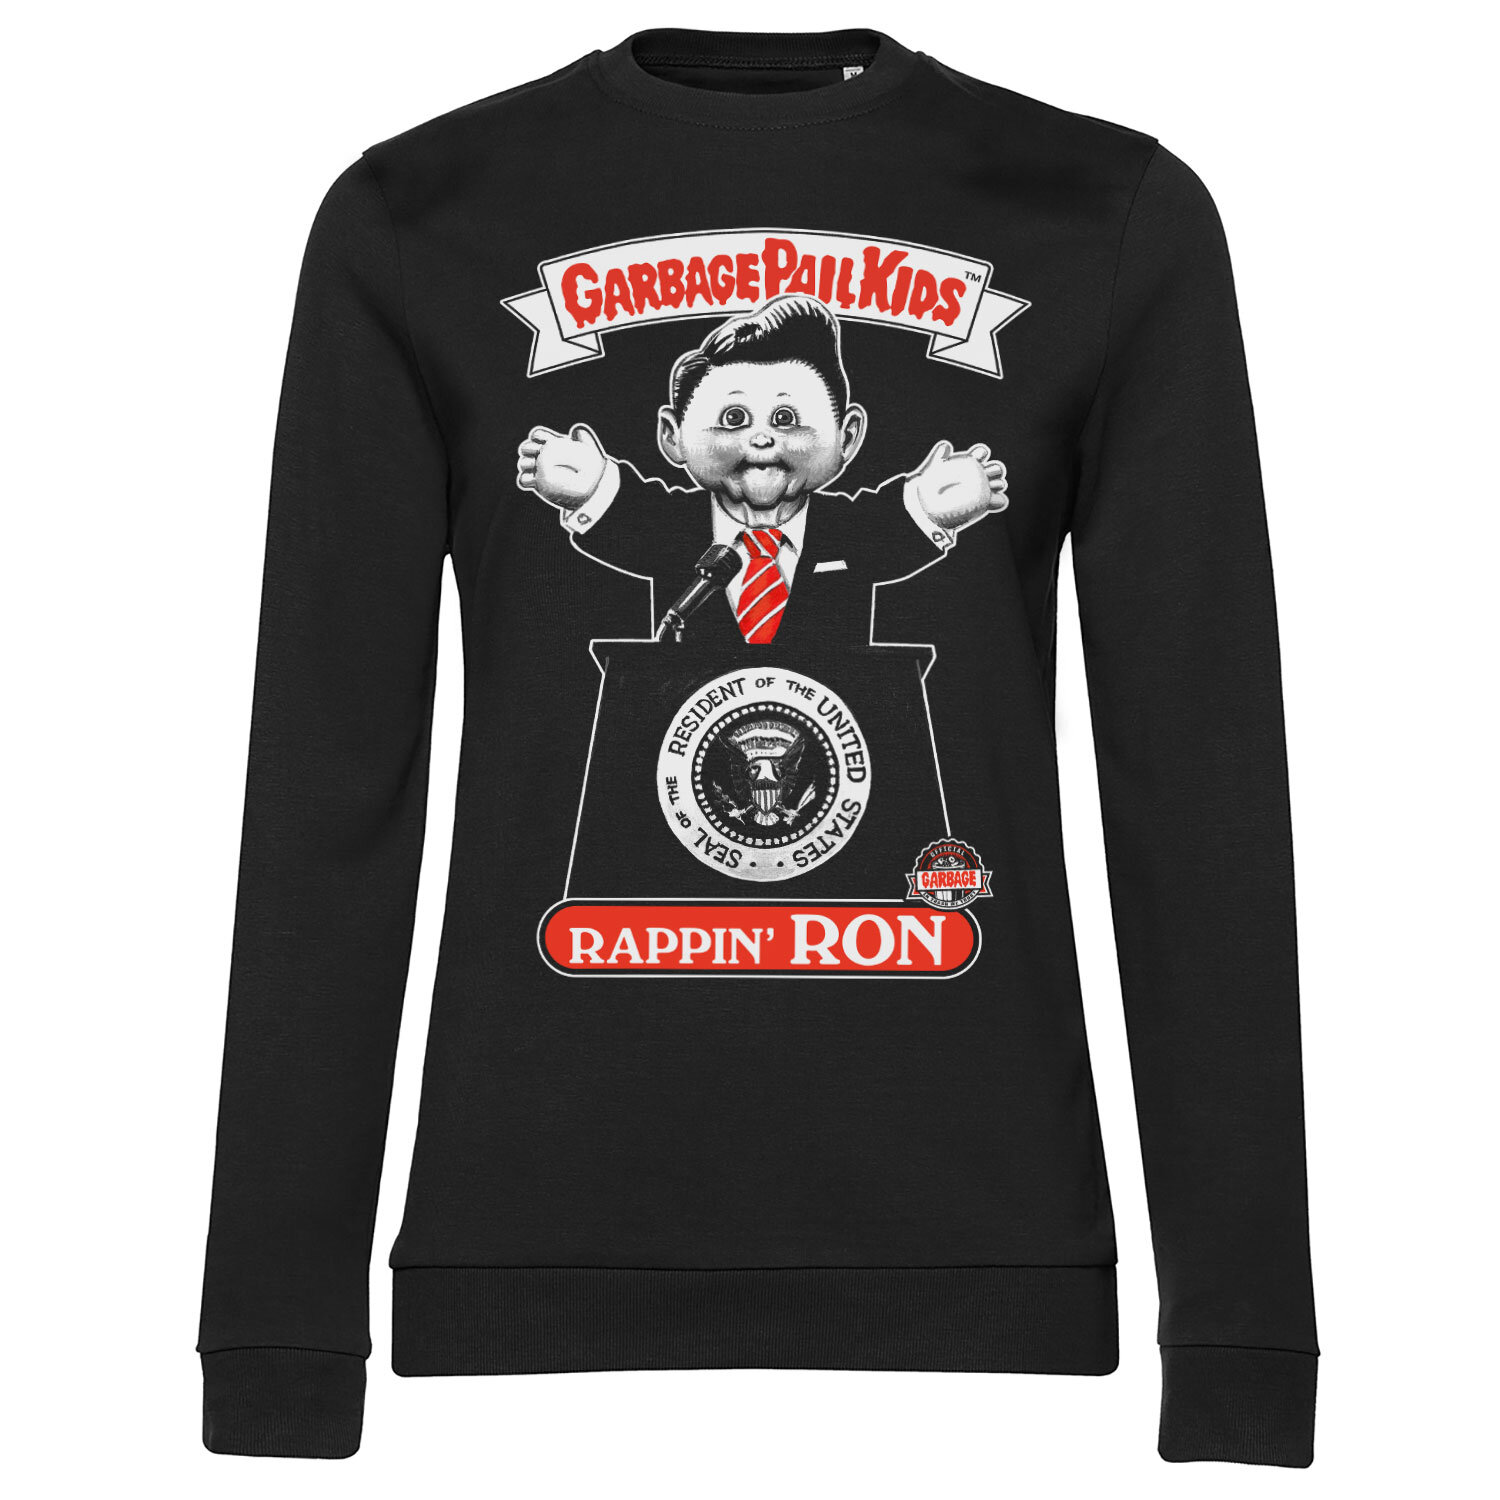 Rappin' Ron Girly Sweatshirt